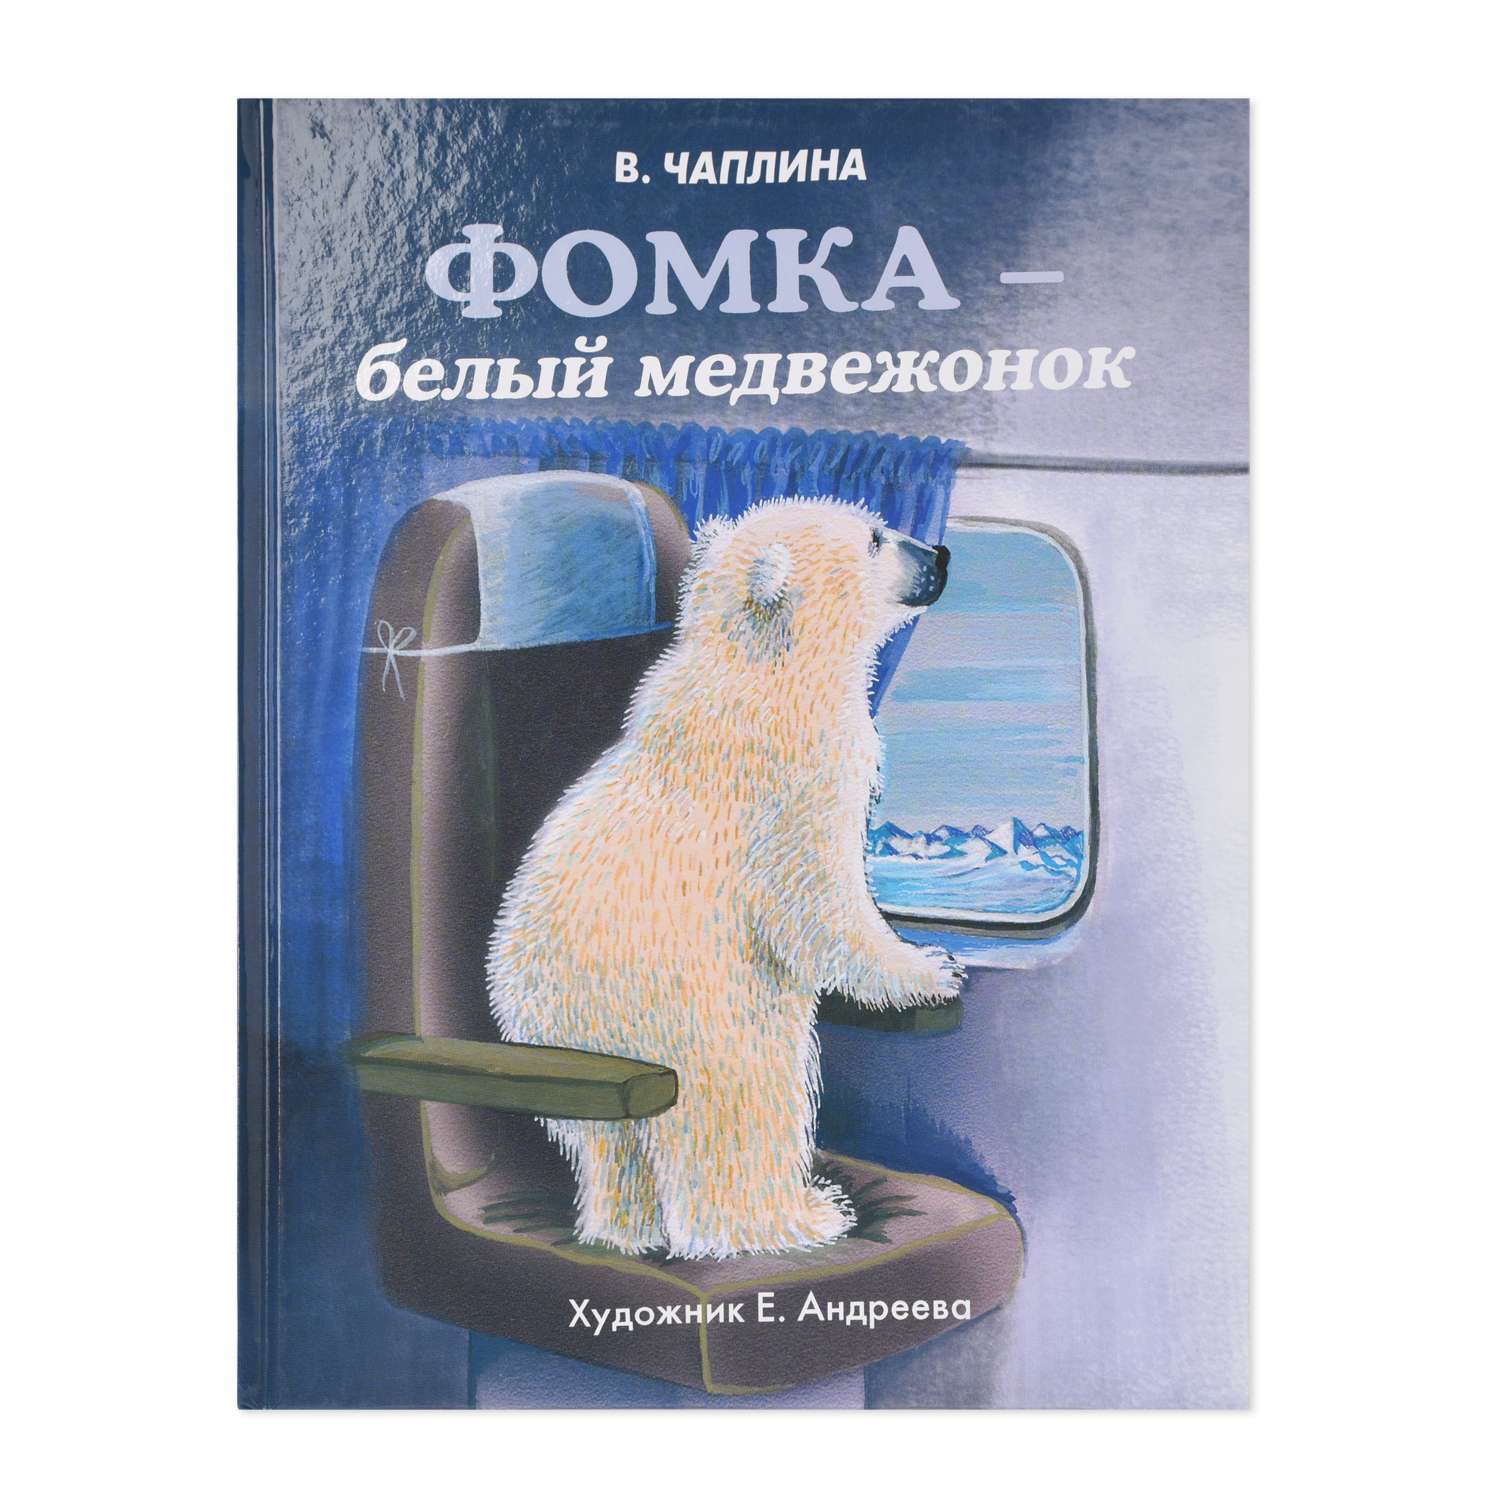 Книга СТРЕКОЗА Фомка белый медвежонок - фото 1